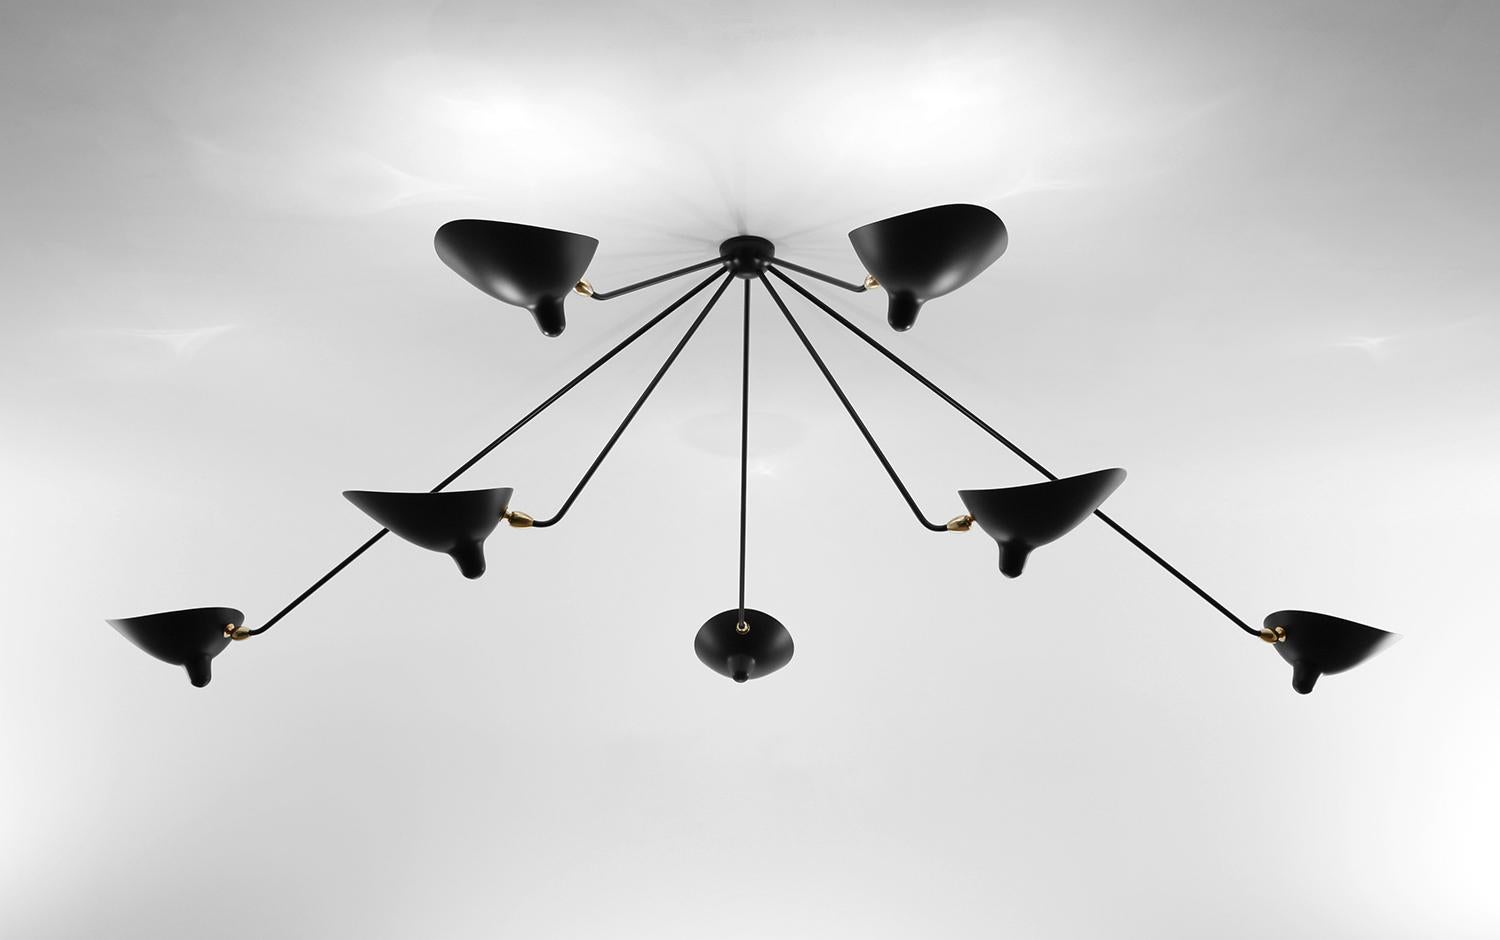 Wandleuchte für die Decke, Modell 'Seven Fixed Arms Spider Ceiling Lamp', entworfen von Serge Mouille im Jahr 1953.

Hergestellt von Editions Serge Mouille in Frankreich. Die Herstellung der Lampen, Wandleuchten und Stehlampen erfolgt in